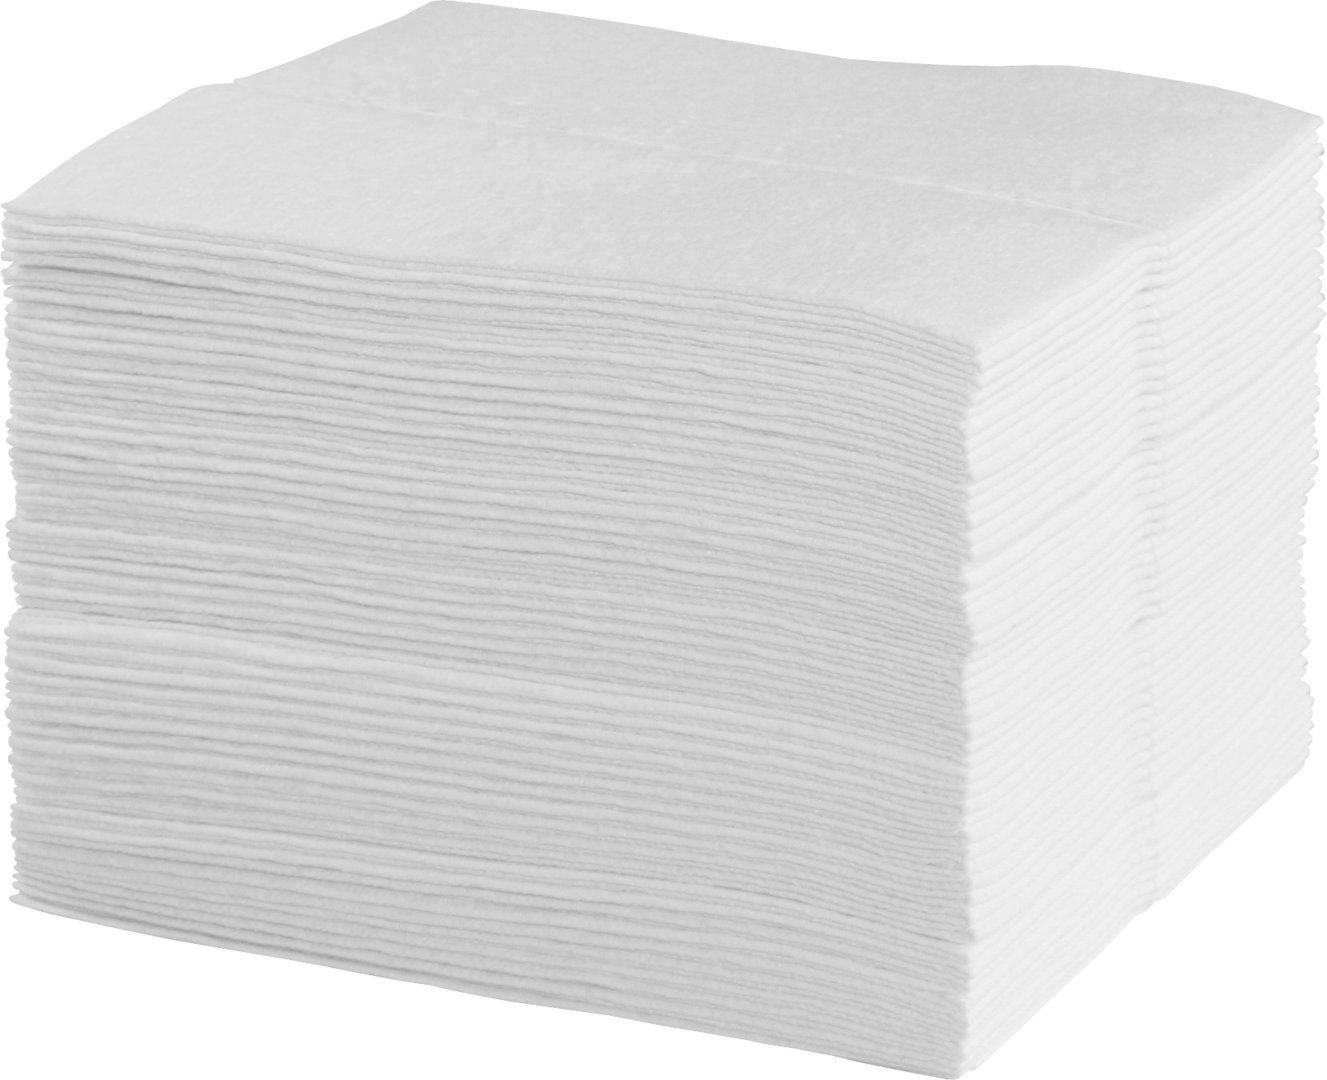 Wichtuch WIPEX Soft, Pflegetuch, 30 x 38 cm, 85 g/m², Z-gefaltet, weiß, 900 Stück/Karton